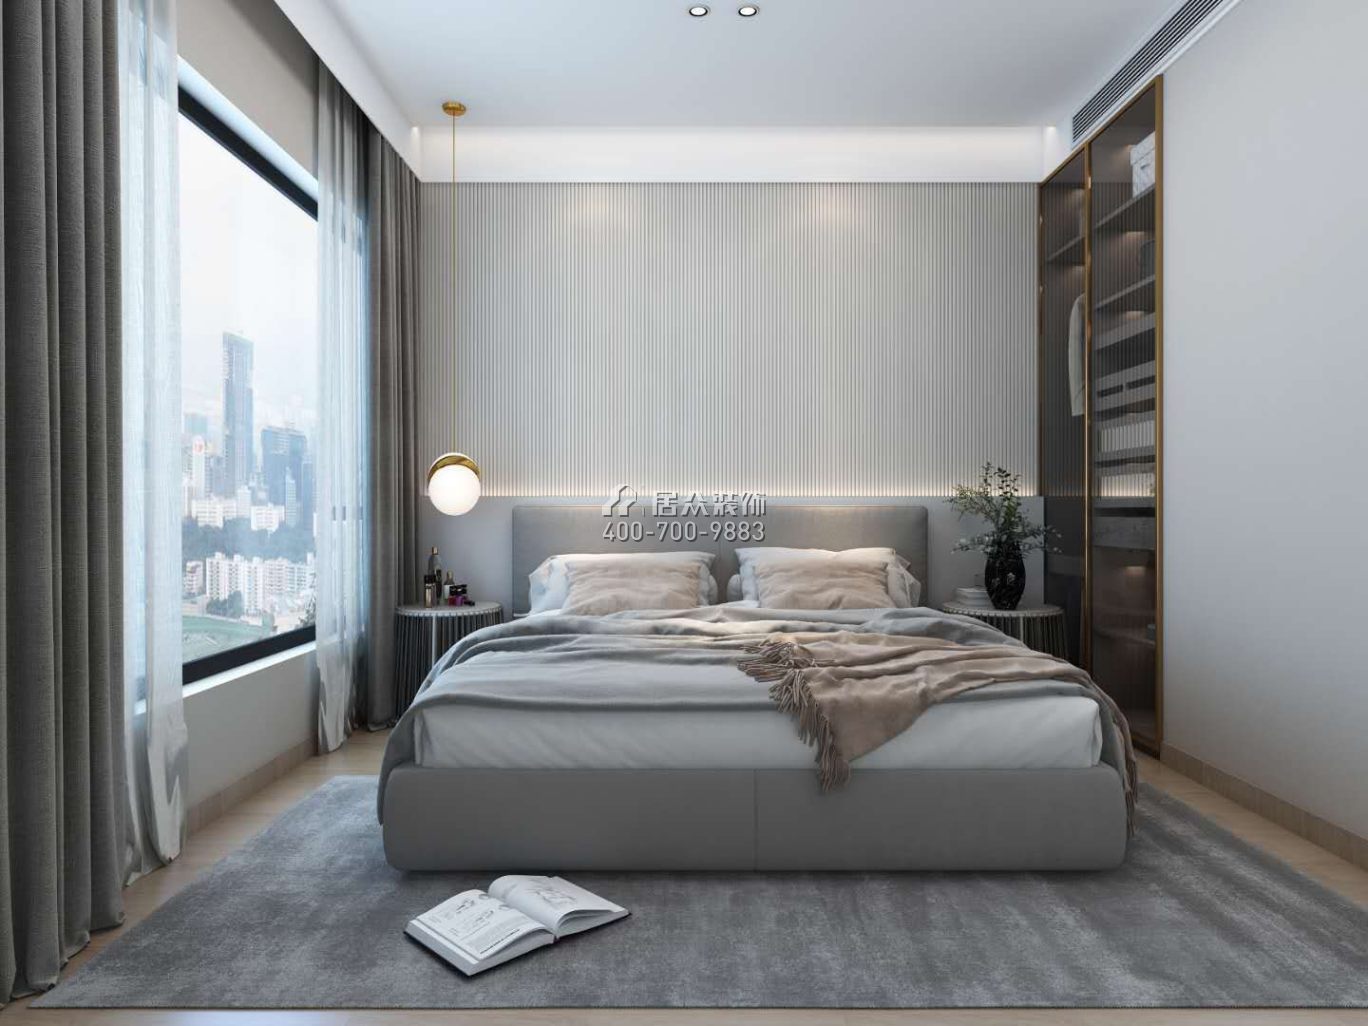 东关乐尚林居108平方米现代简约风格平层户型卧室装修效果图